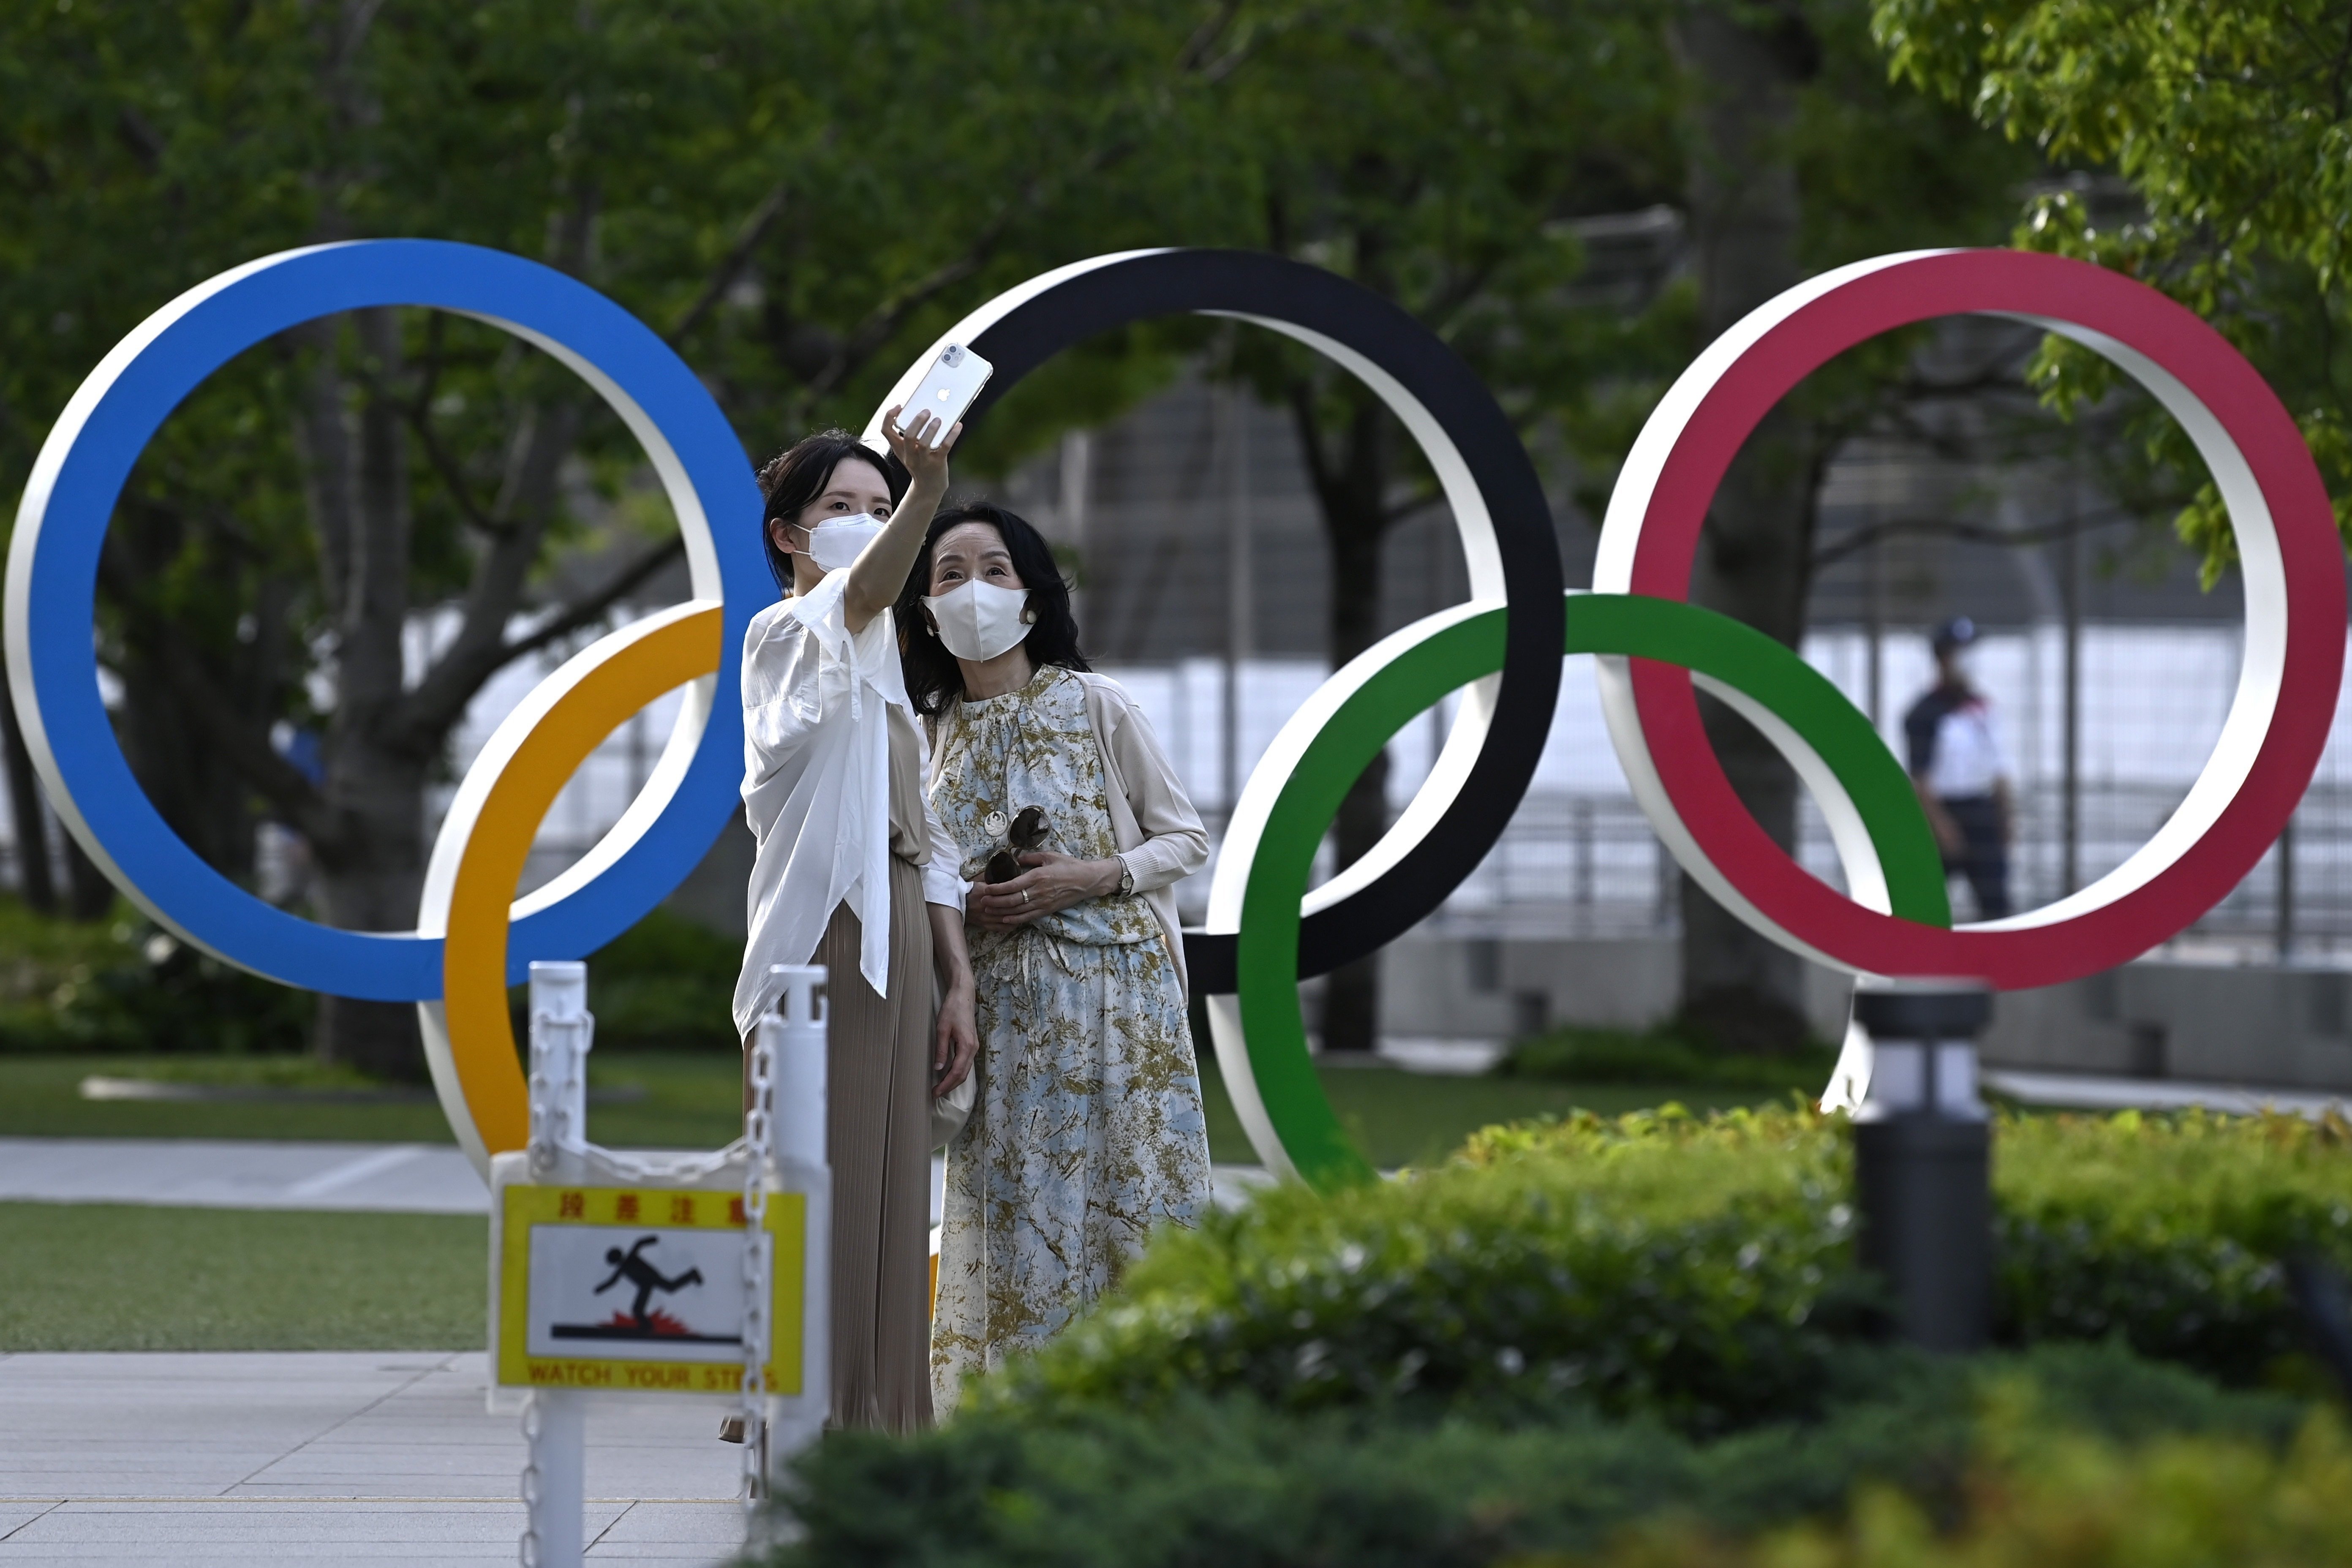 juegos olimpicos jjoo tokio 2020 coronavirus efe